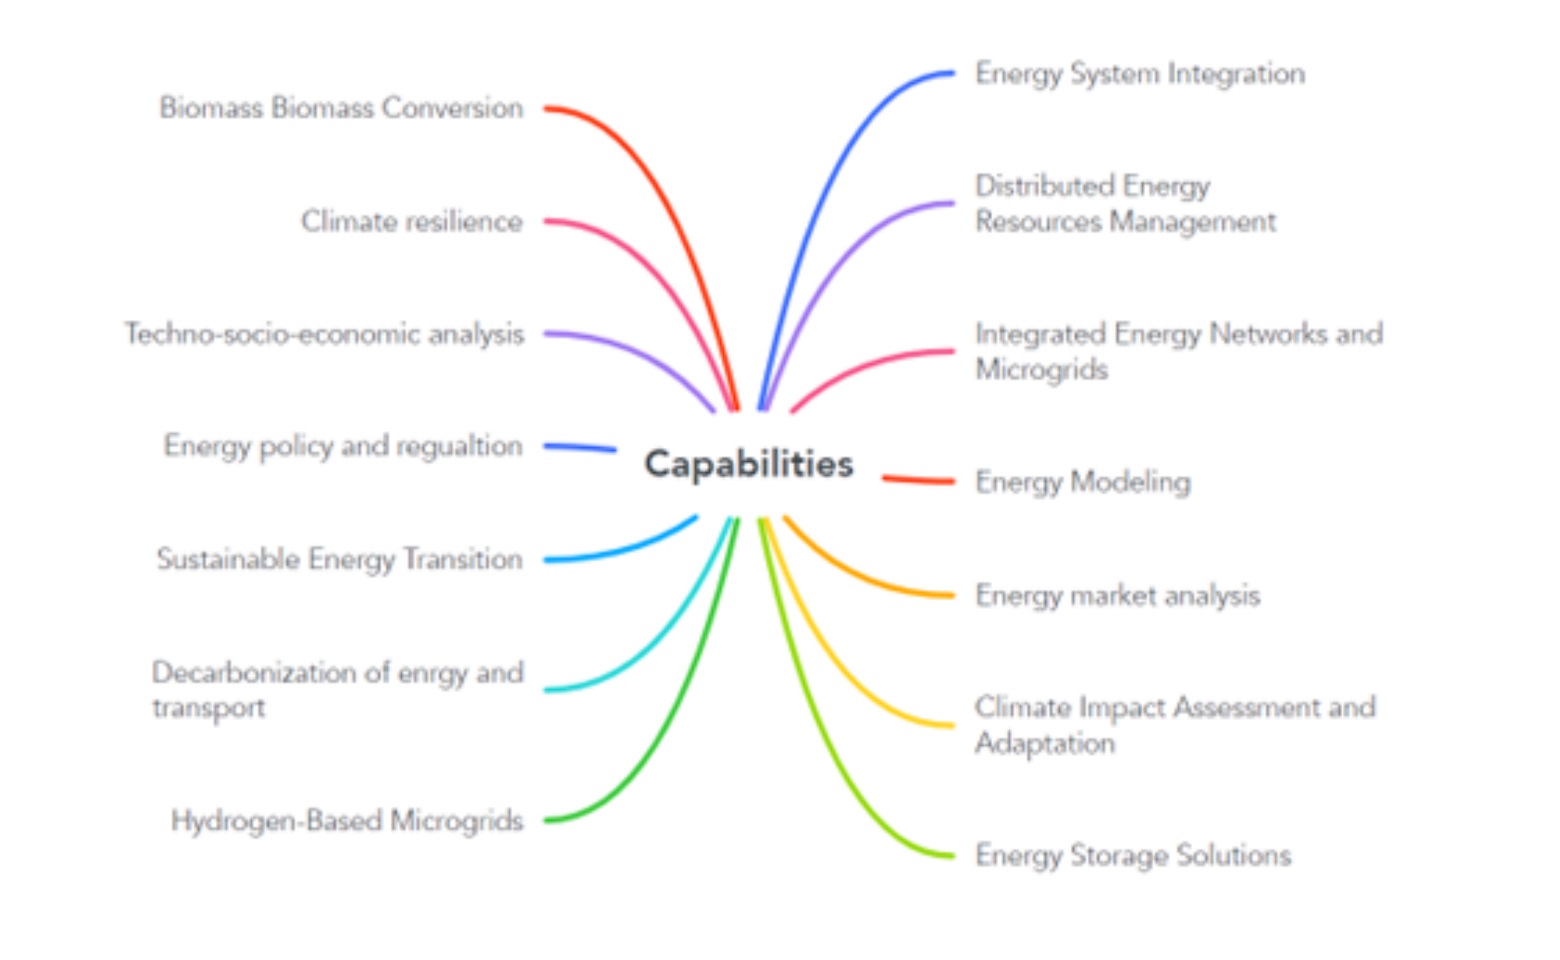 Diagram of capabilities